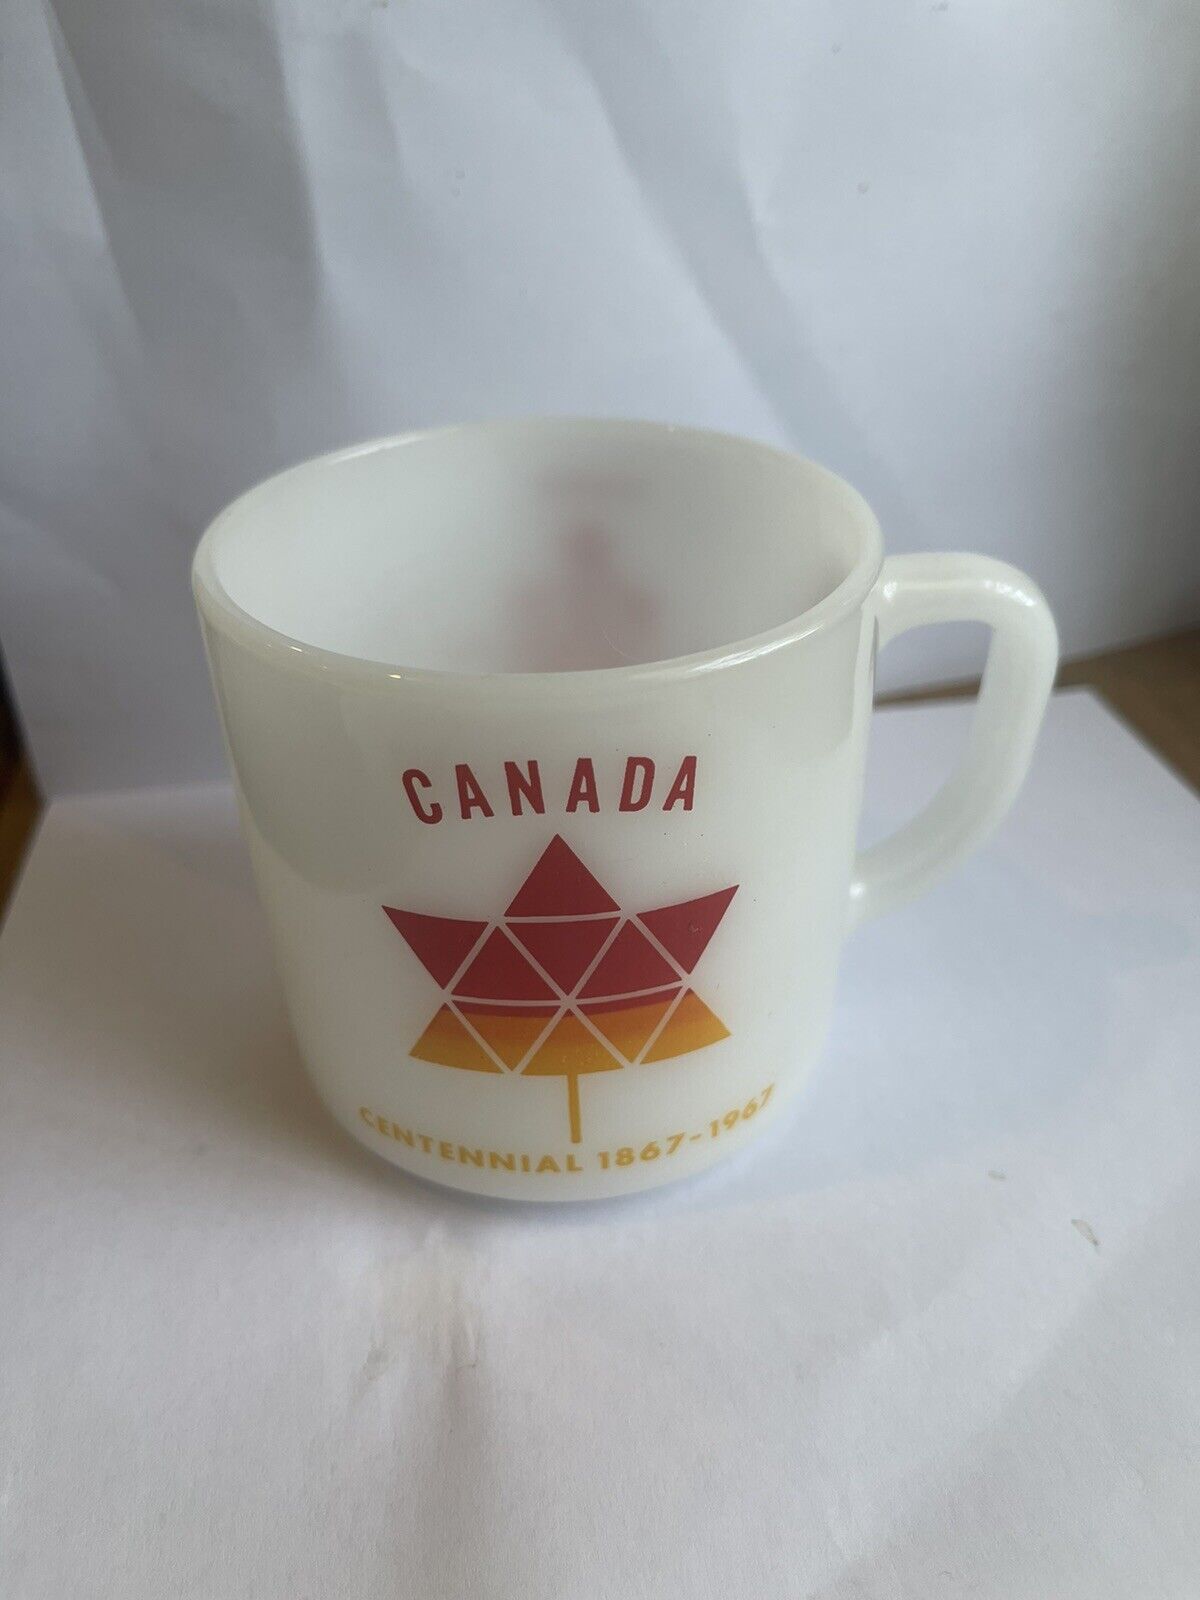 1867-1967 Canada Centennial Federal Glass- Rare Red/Orange